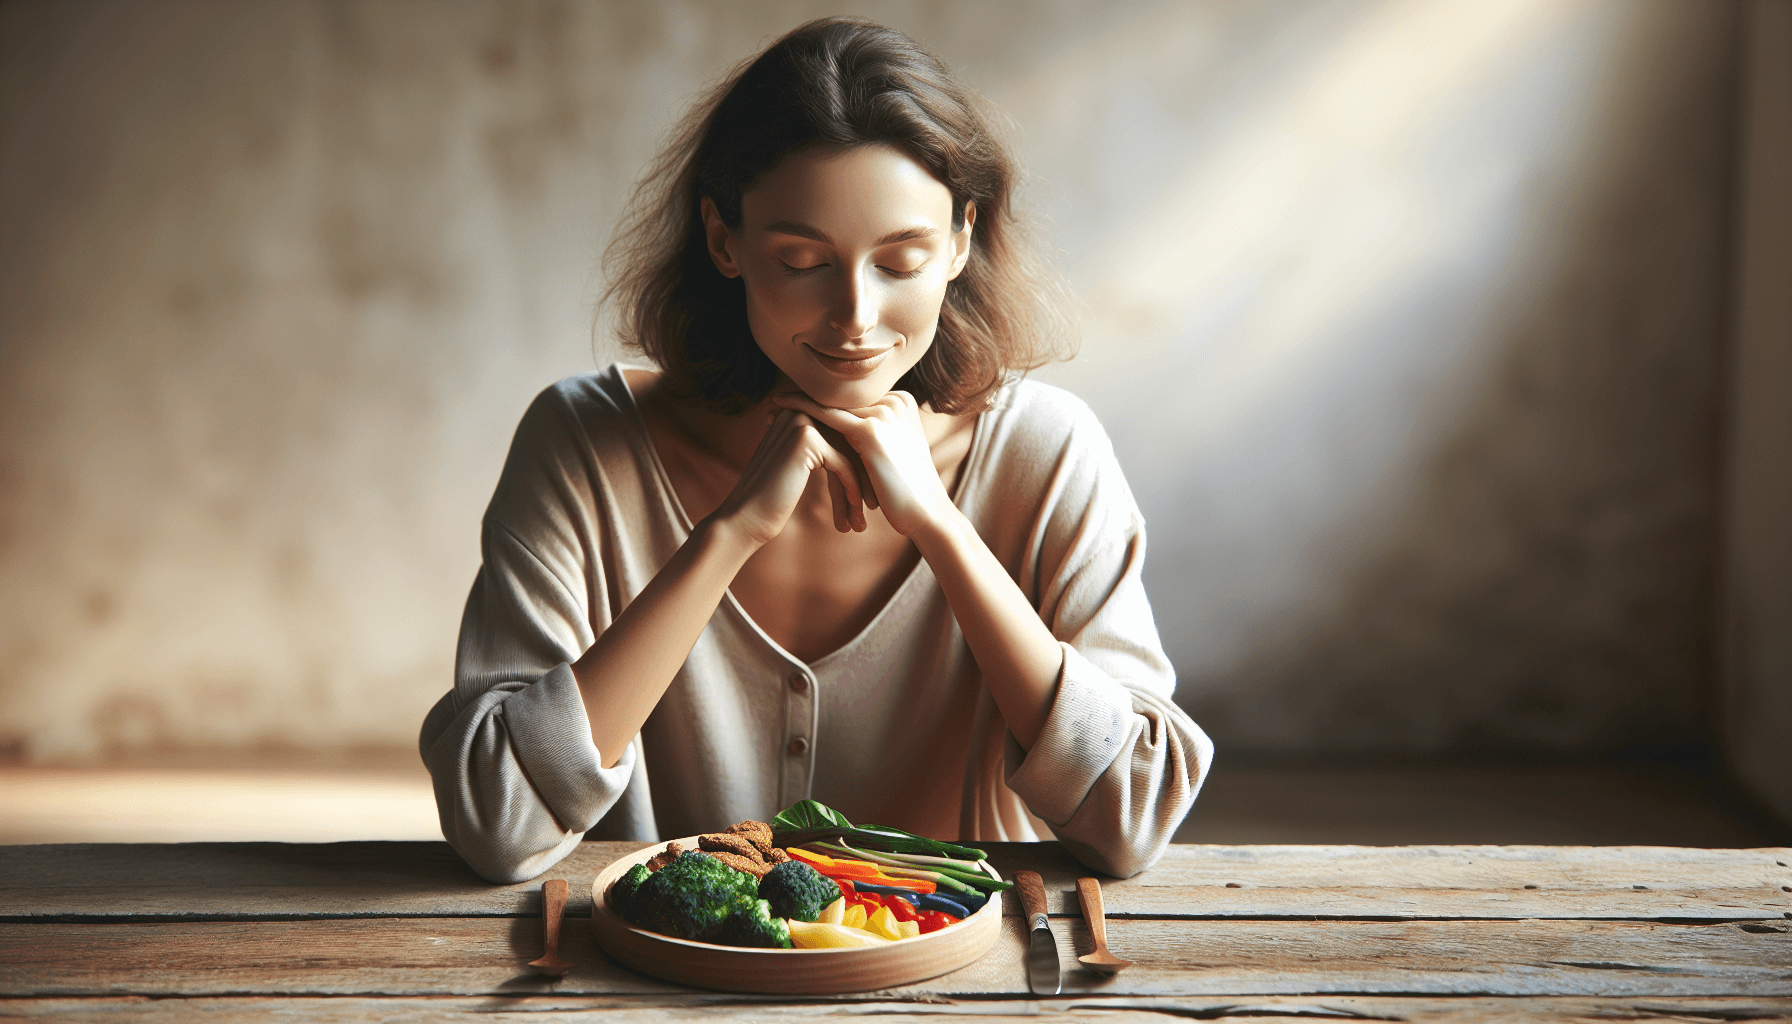 Illustration of mindful eating